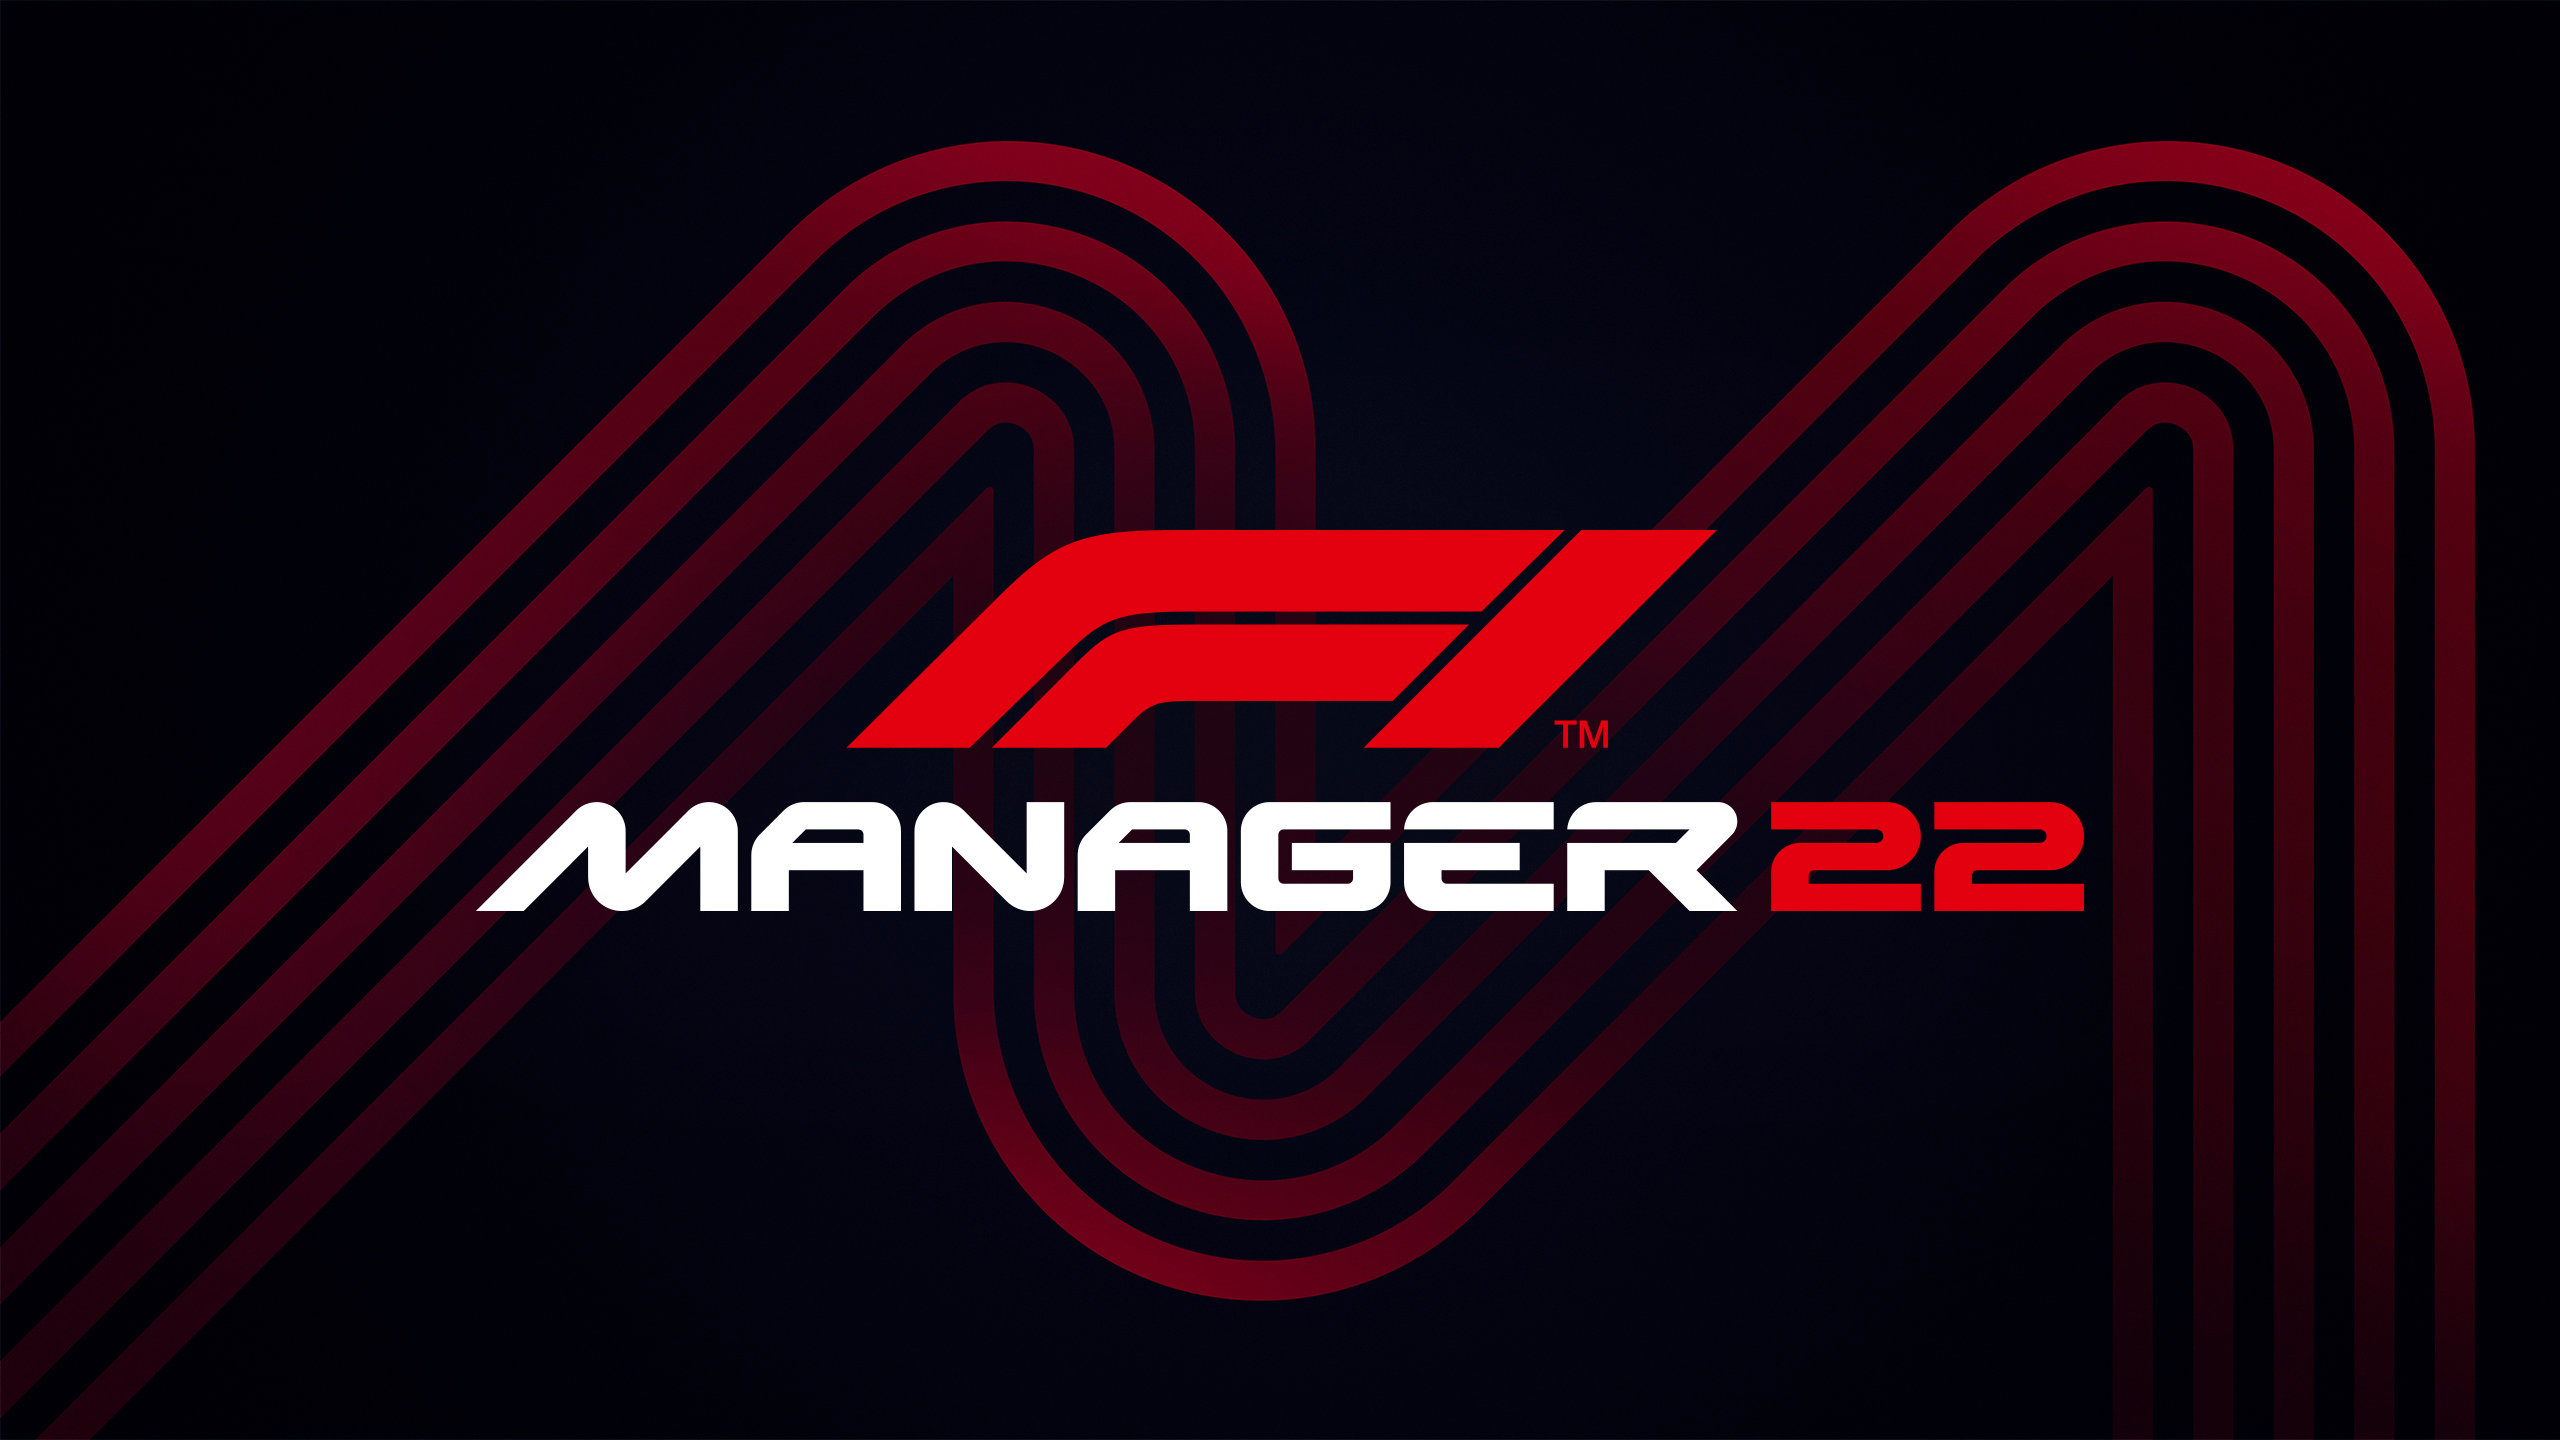 F1 Manager 2022 İçin Tanıtım Videosu Paylaşıldı!